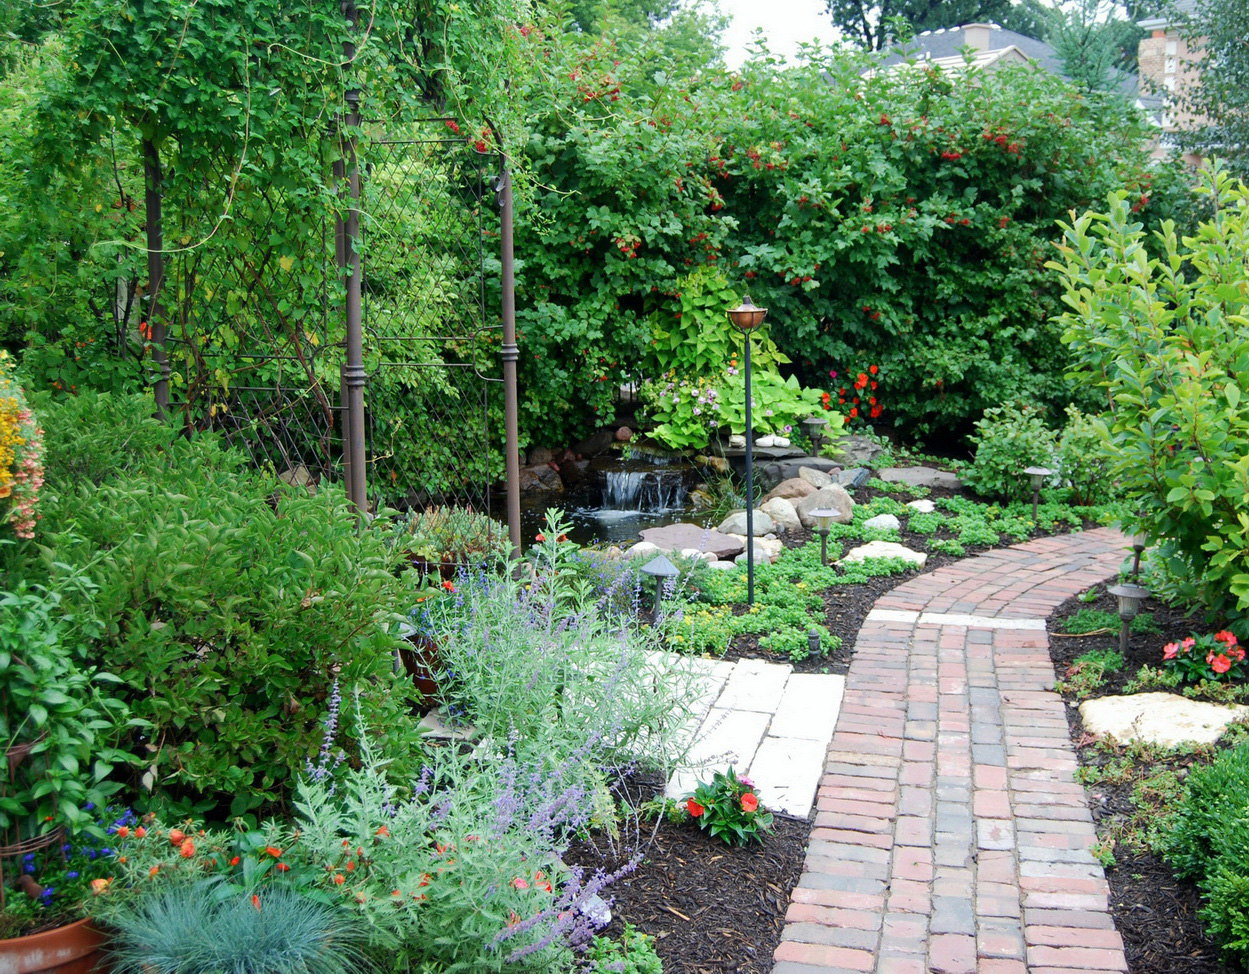 Inspiring Garden Ideas For Kids Garden Ideas For Kids Backyard Backyard Landscaping Ideas For Kids